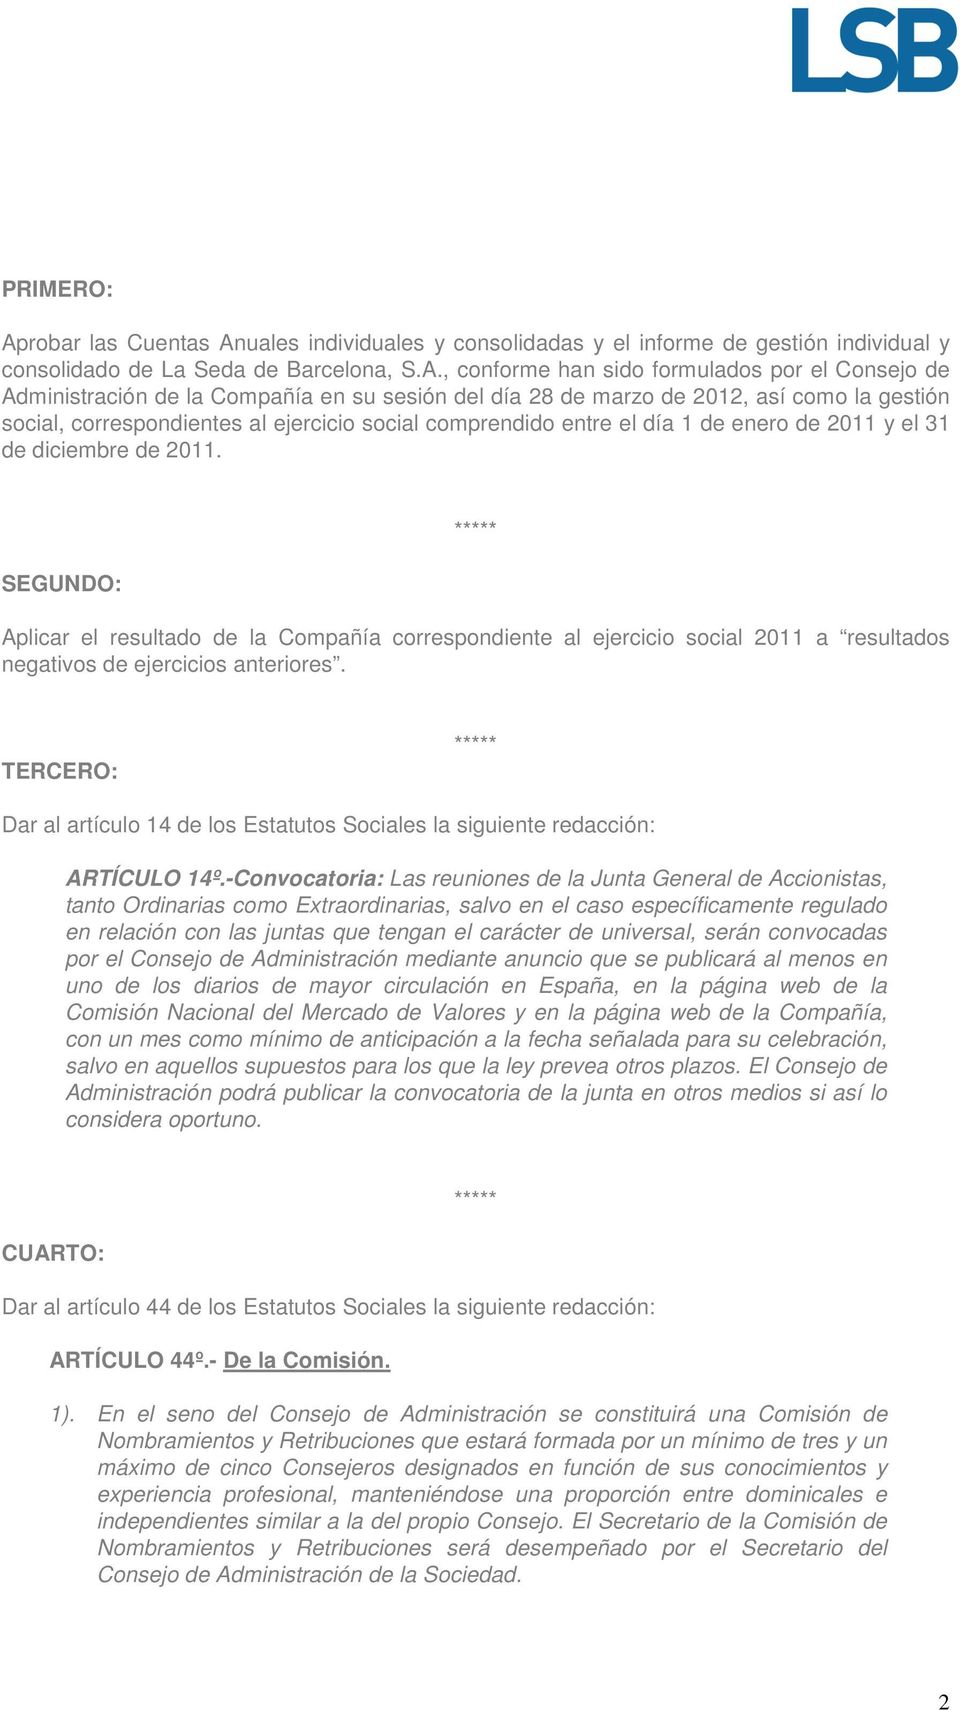 uales individuales y consolidadas y el informe de gestión individual y consolidado de La Seda de Barcelona, S.A.